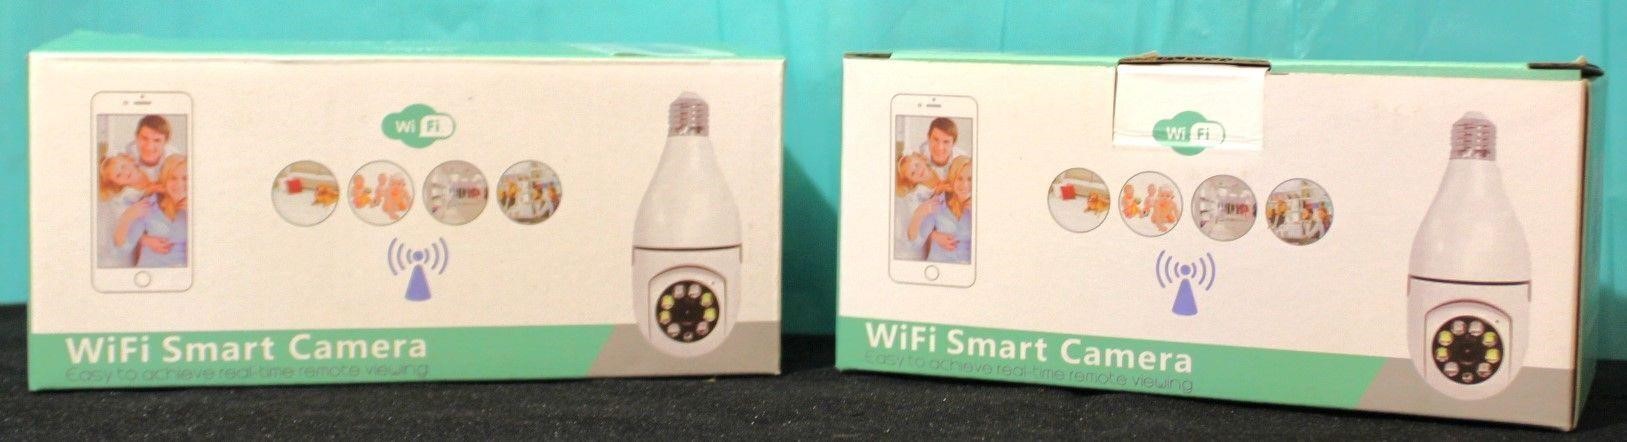 2 WiFi Smart Security Camera Lightbulbs